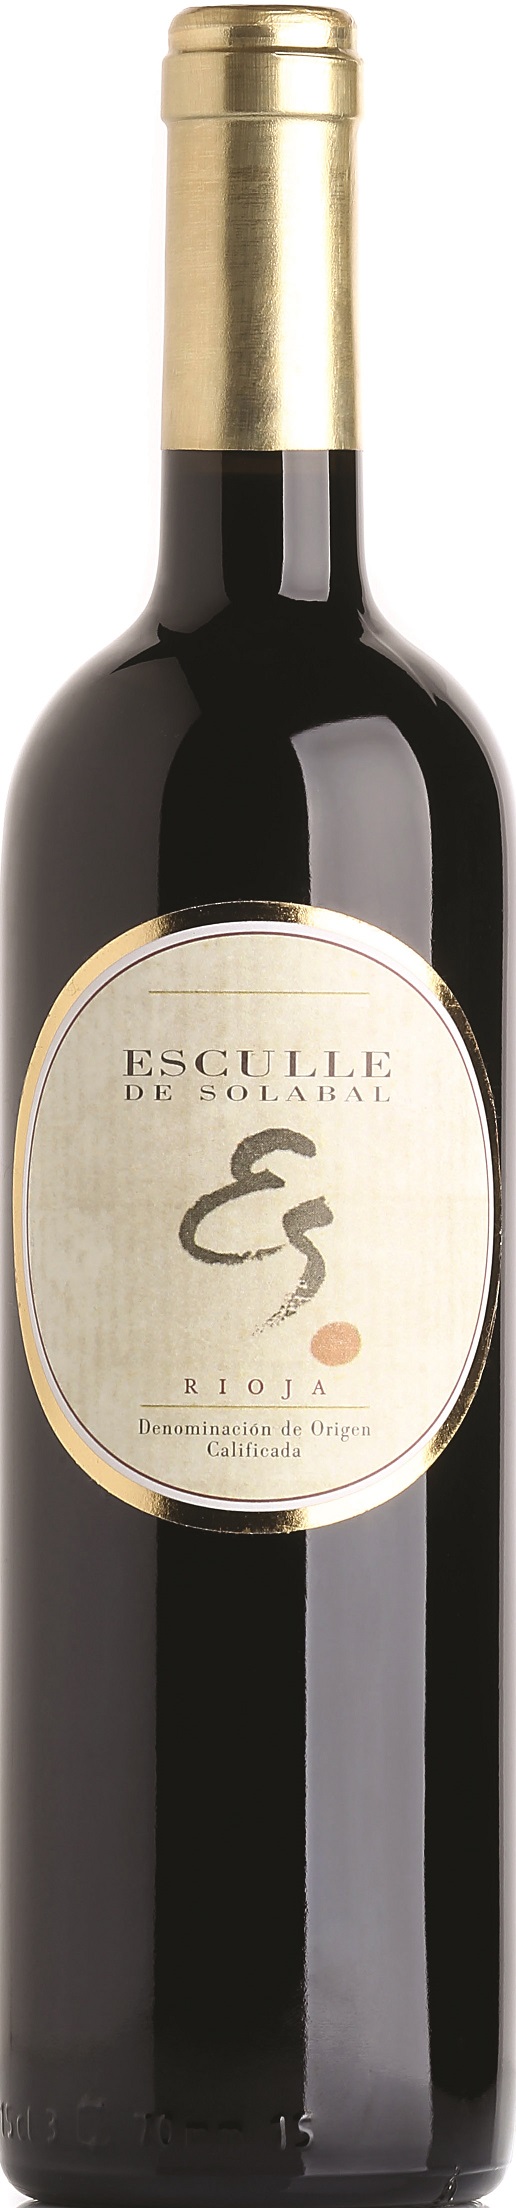 Logo Wein Esculle de Solabal